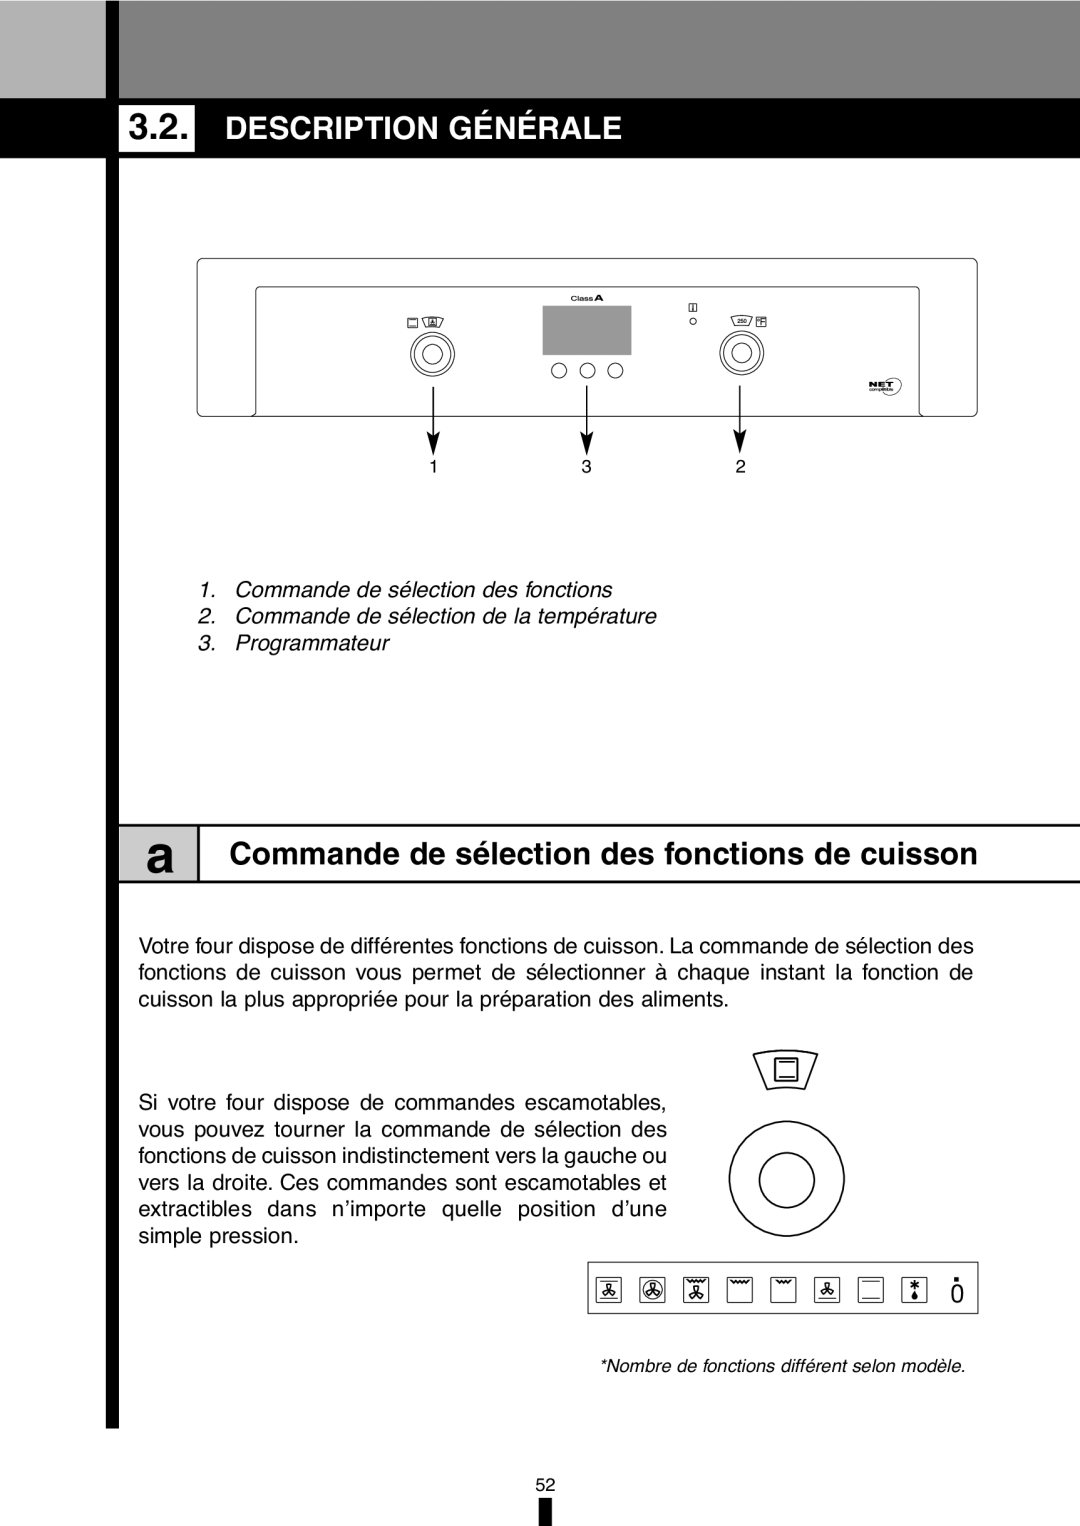 Fagor America 5HA-196X manual Description Générale, Commande de sélection des fonctions de cuisson, Programmateur 